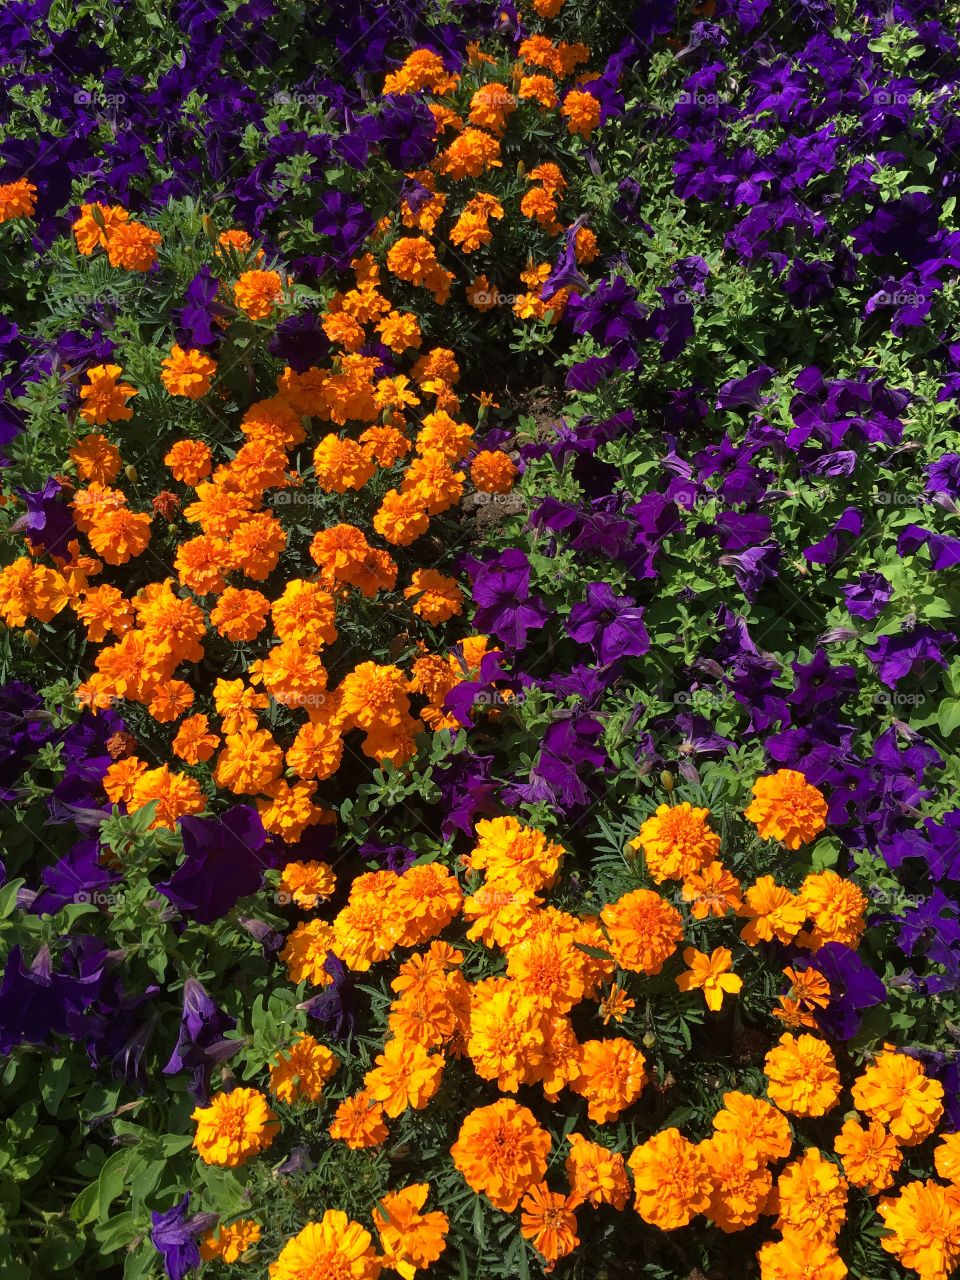 Orange & purple flowers